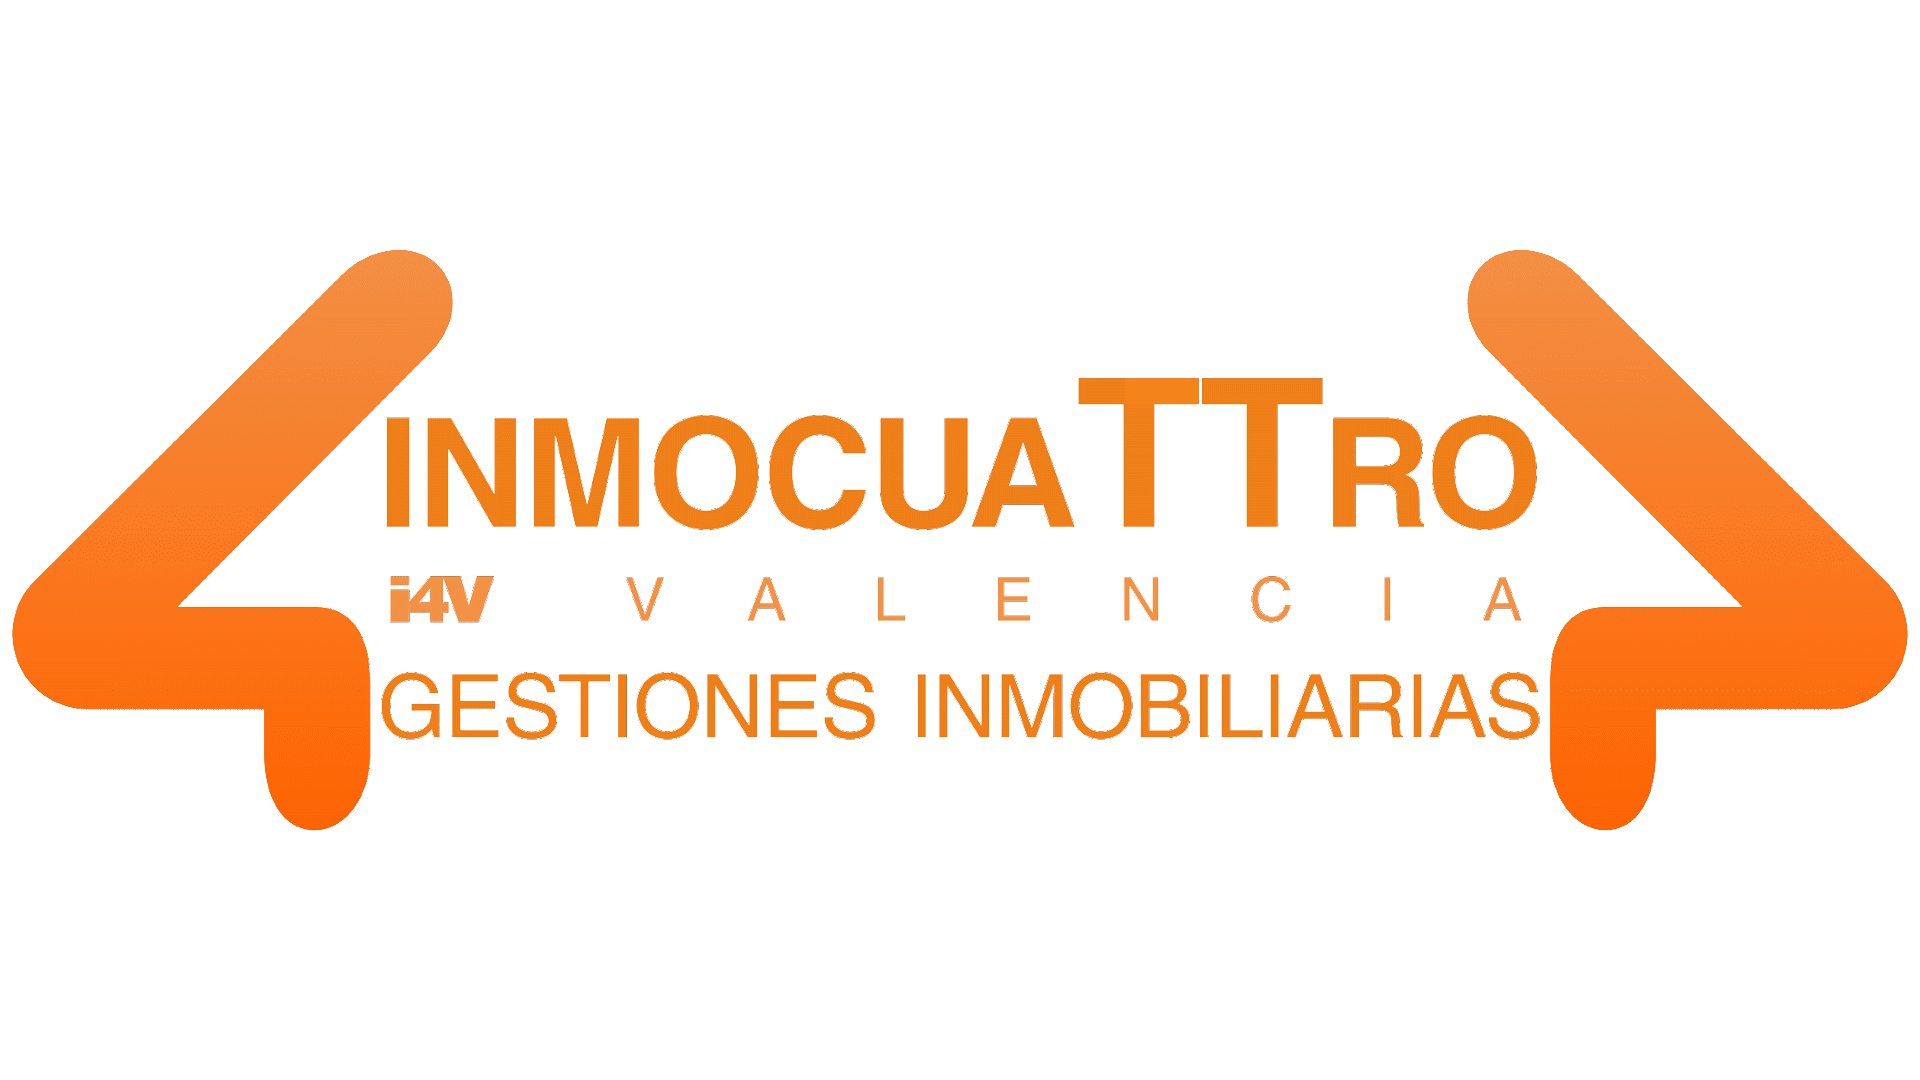  INMOCUATTRO  Valencia Gestiones Inmobiliaria